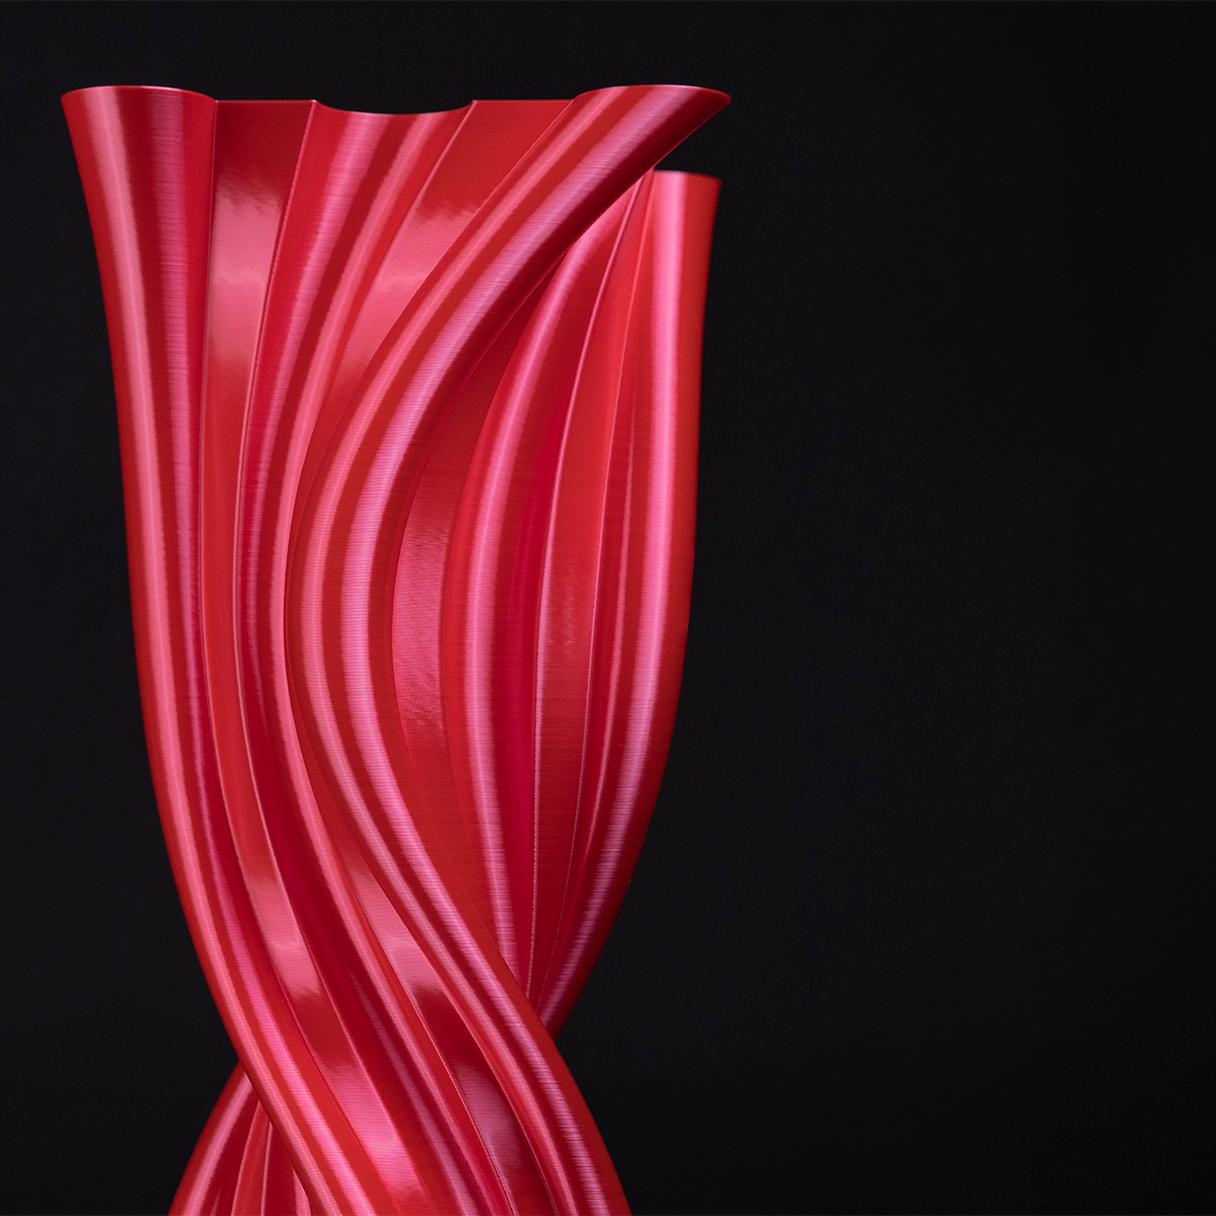 Tersicore, vase-sculpture rouge contemporain durable Neuf à Livorno, LI